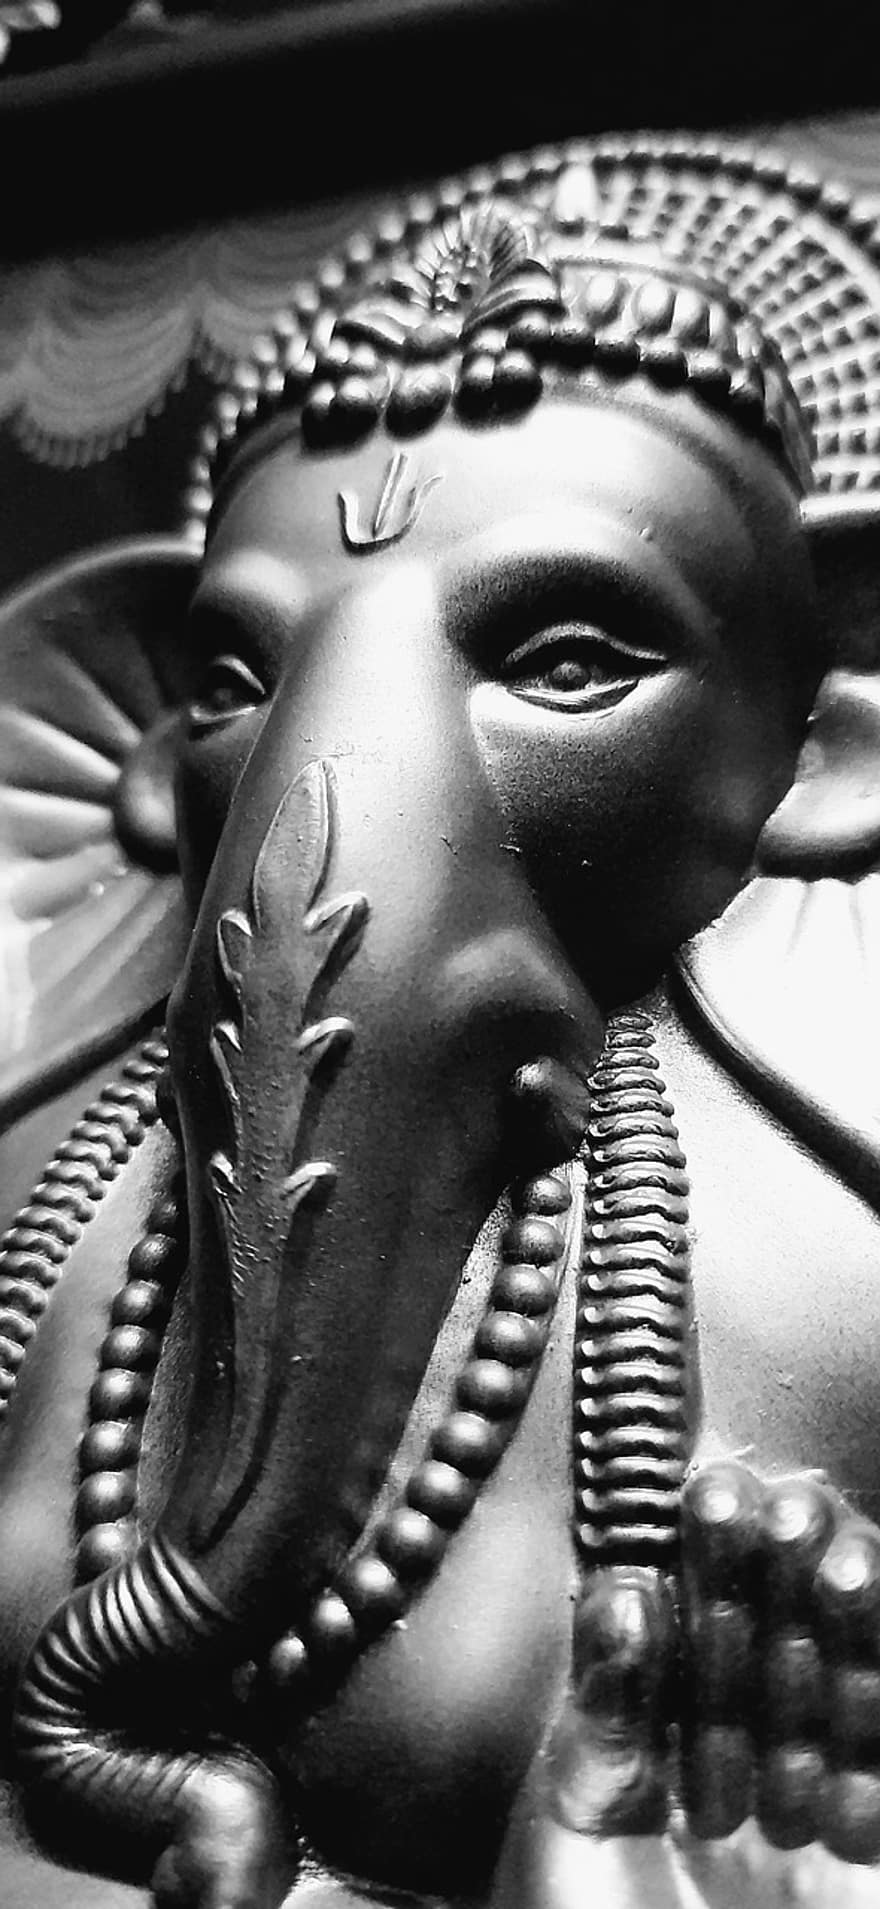 Ganesha, patsas, yksivärinen, hindulainen, Jumala, Ganpati, ganesh, hindulaisuus, norsu, perinteinen, hengellinen